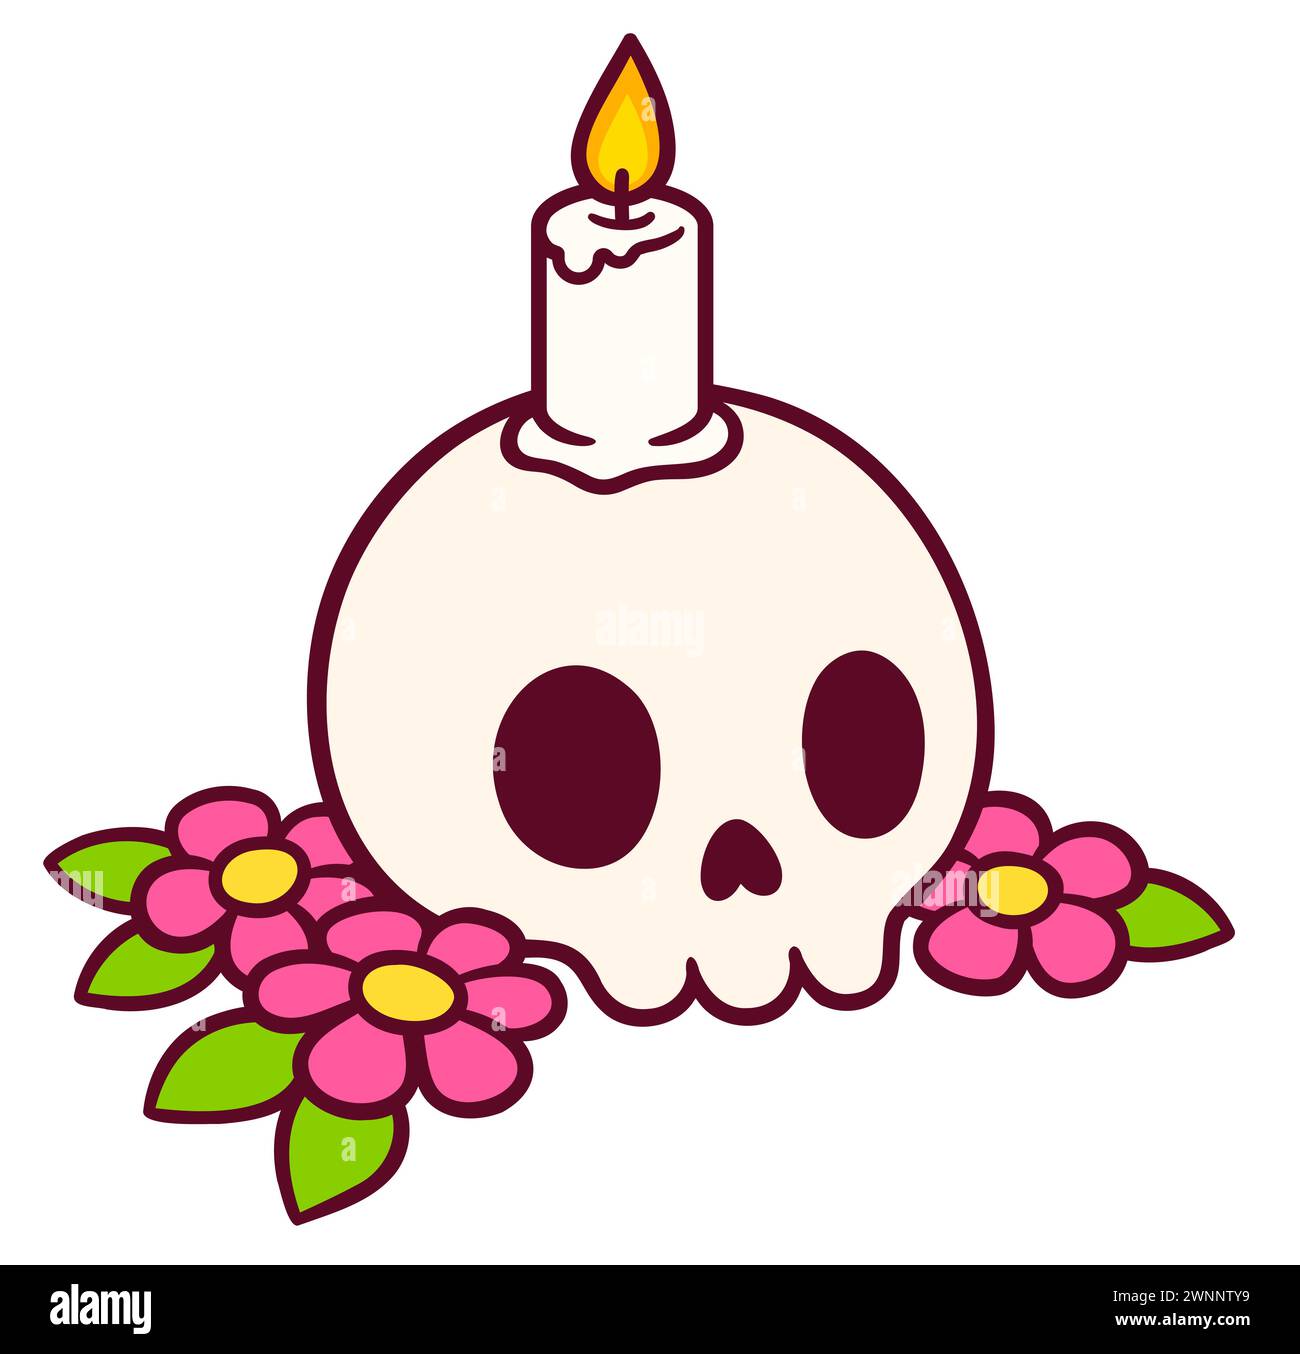 Zeichentrick-Schädelzeichnung mit Kerze und Blumen. Tag der toten Dekoration. Niedlicher Tattooblitz oder Aufkleber, handgezeichnetes Doodle. Vektorabbildung. Stock Vektor